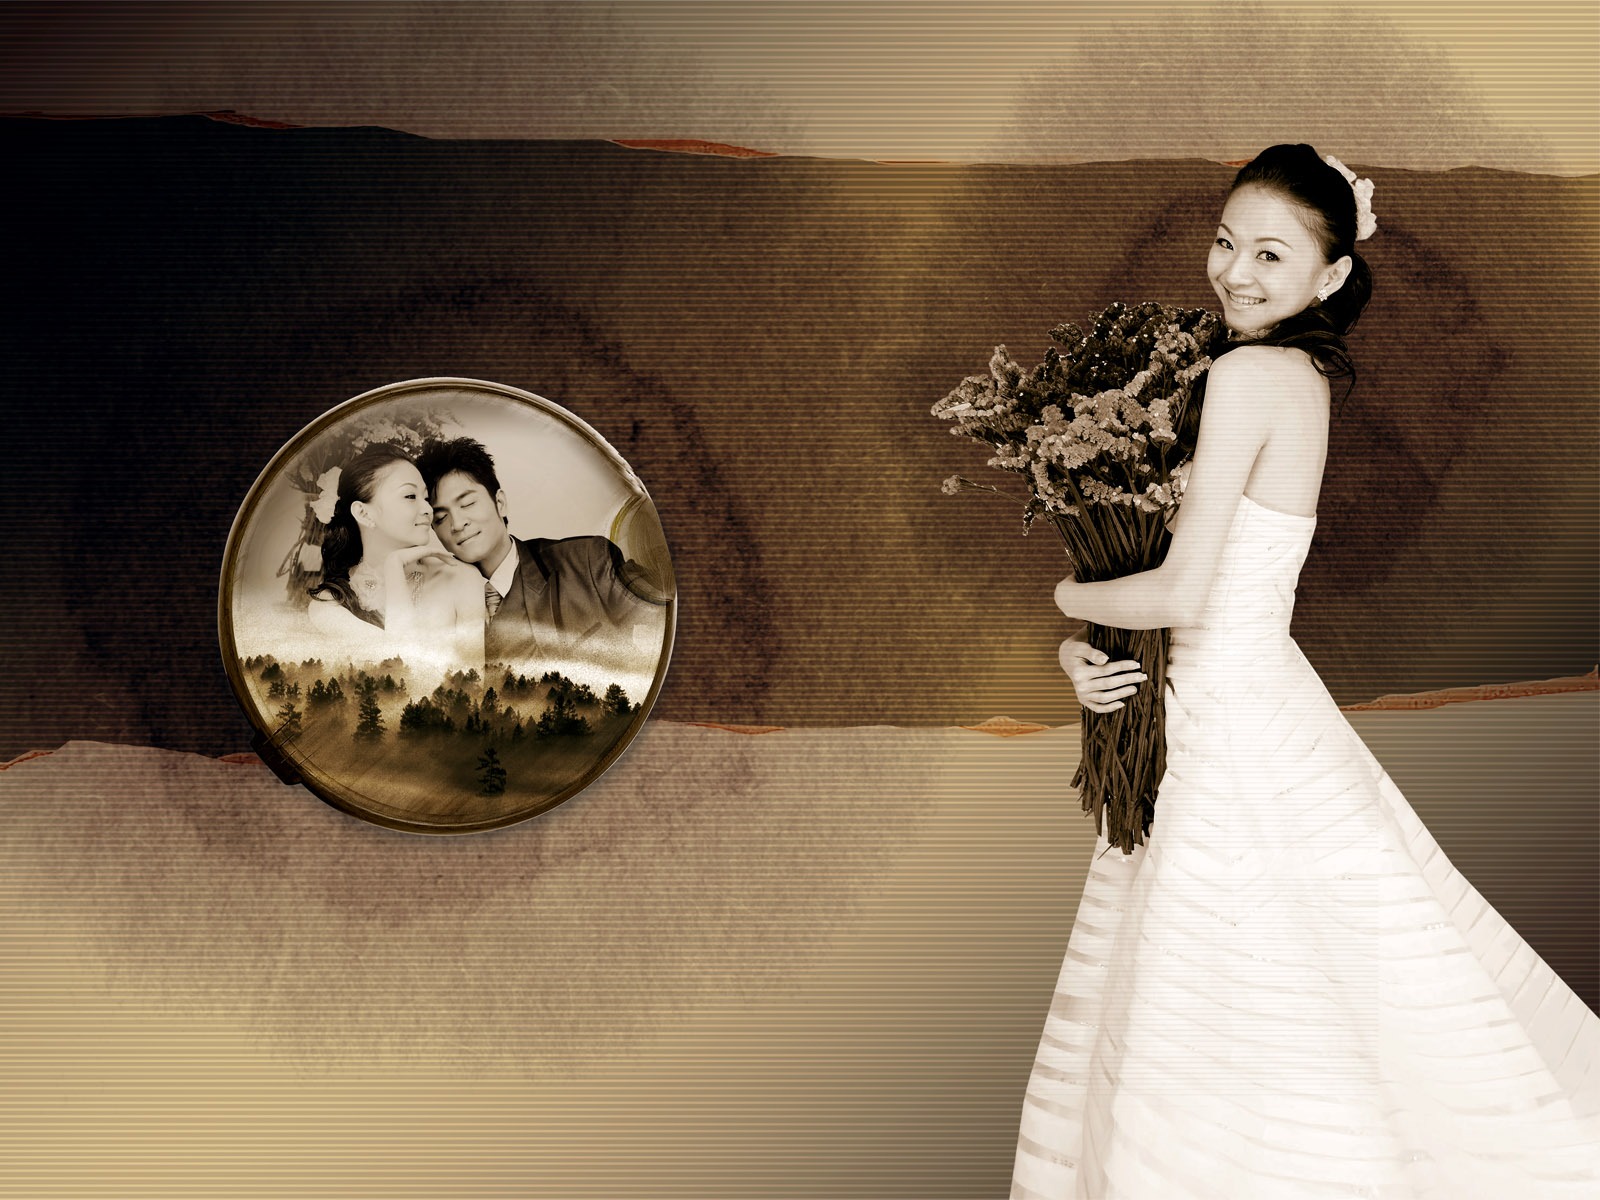 Fotografía de la boda álbum de fondo de pantalla (1) #18 - 1600x1200